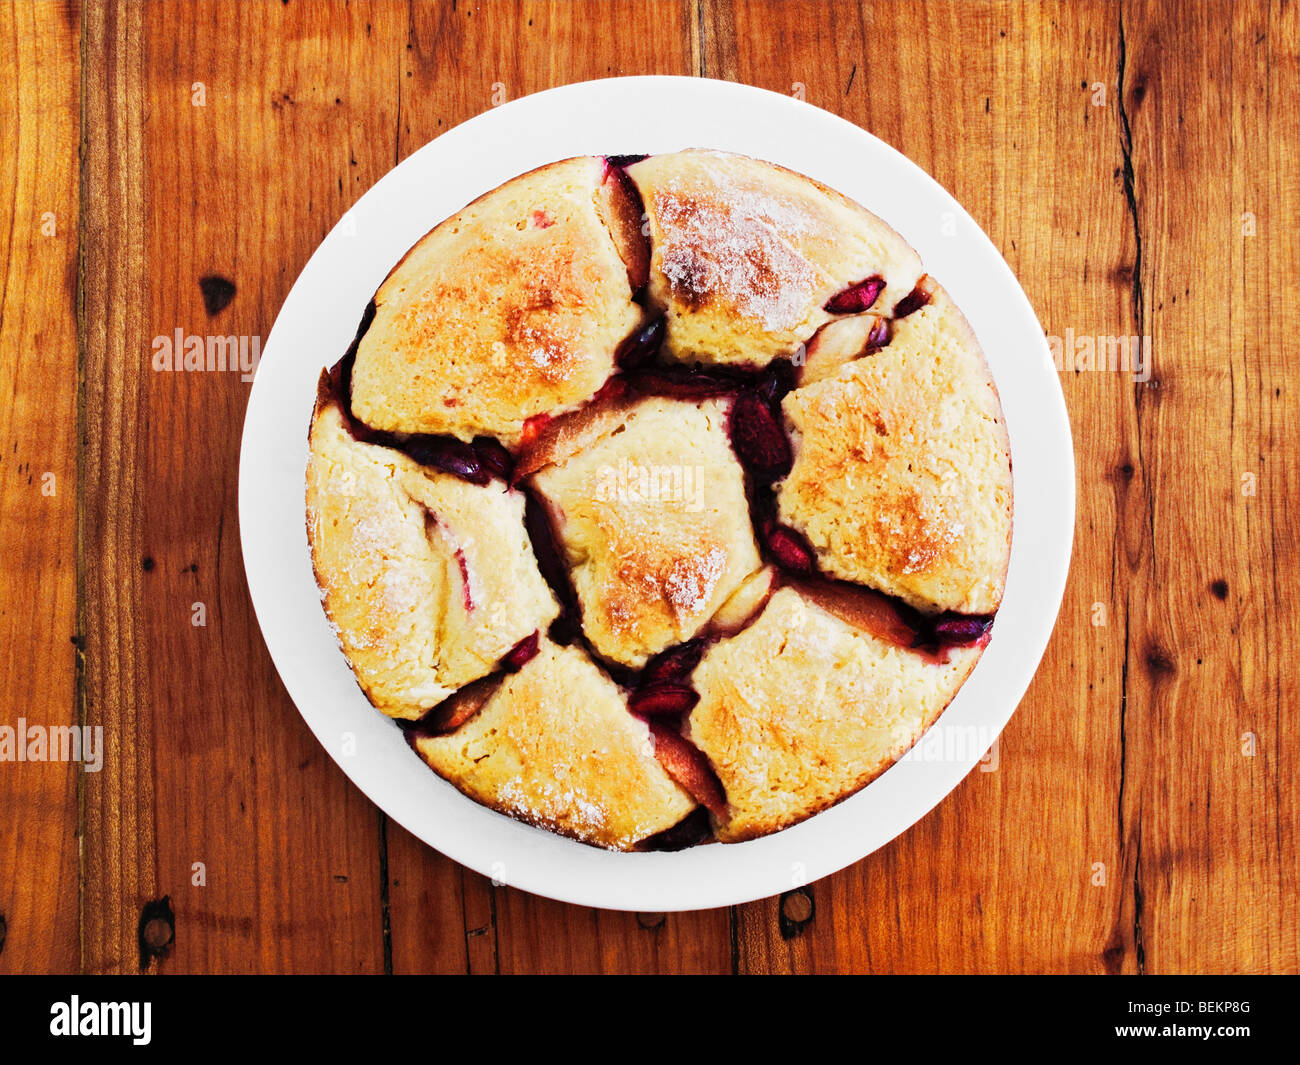 Boulette de pain autrichien avec des fruits sur la table en bois rustique Banque D'Images